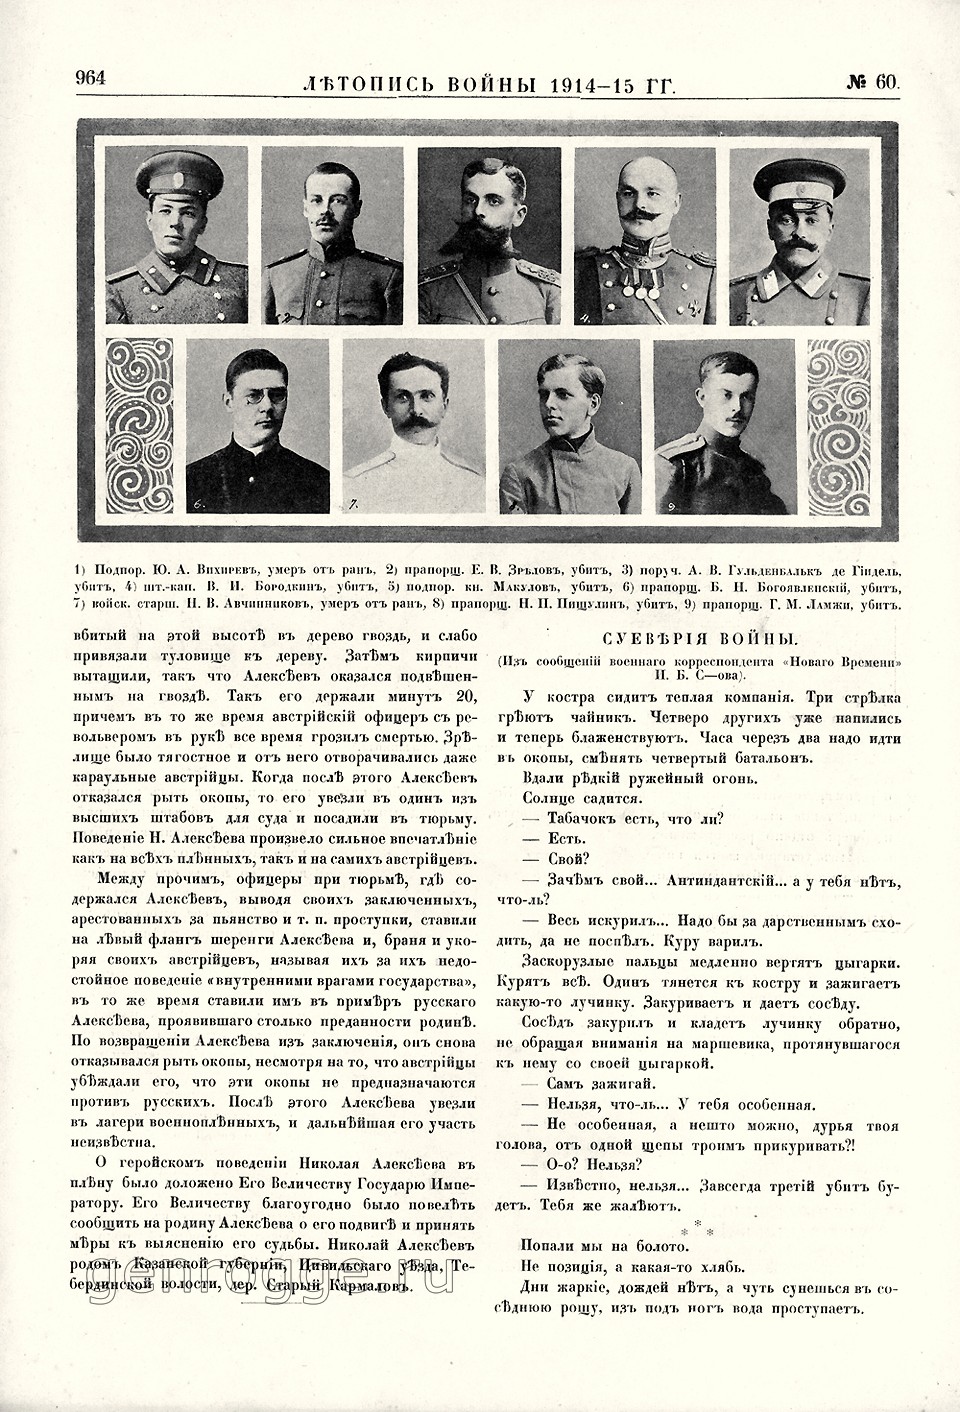   1914-15 . `1915 .,  60, . 964